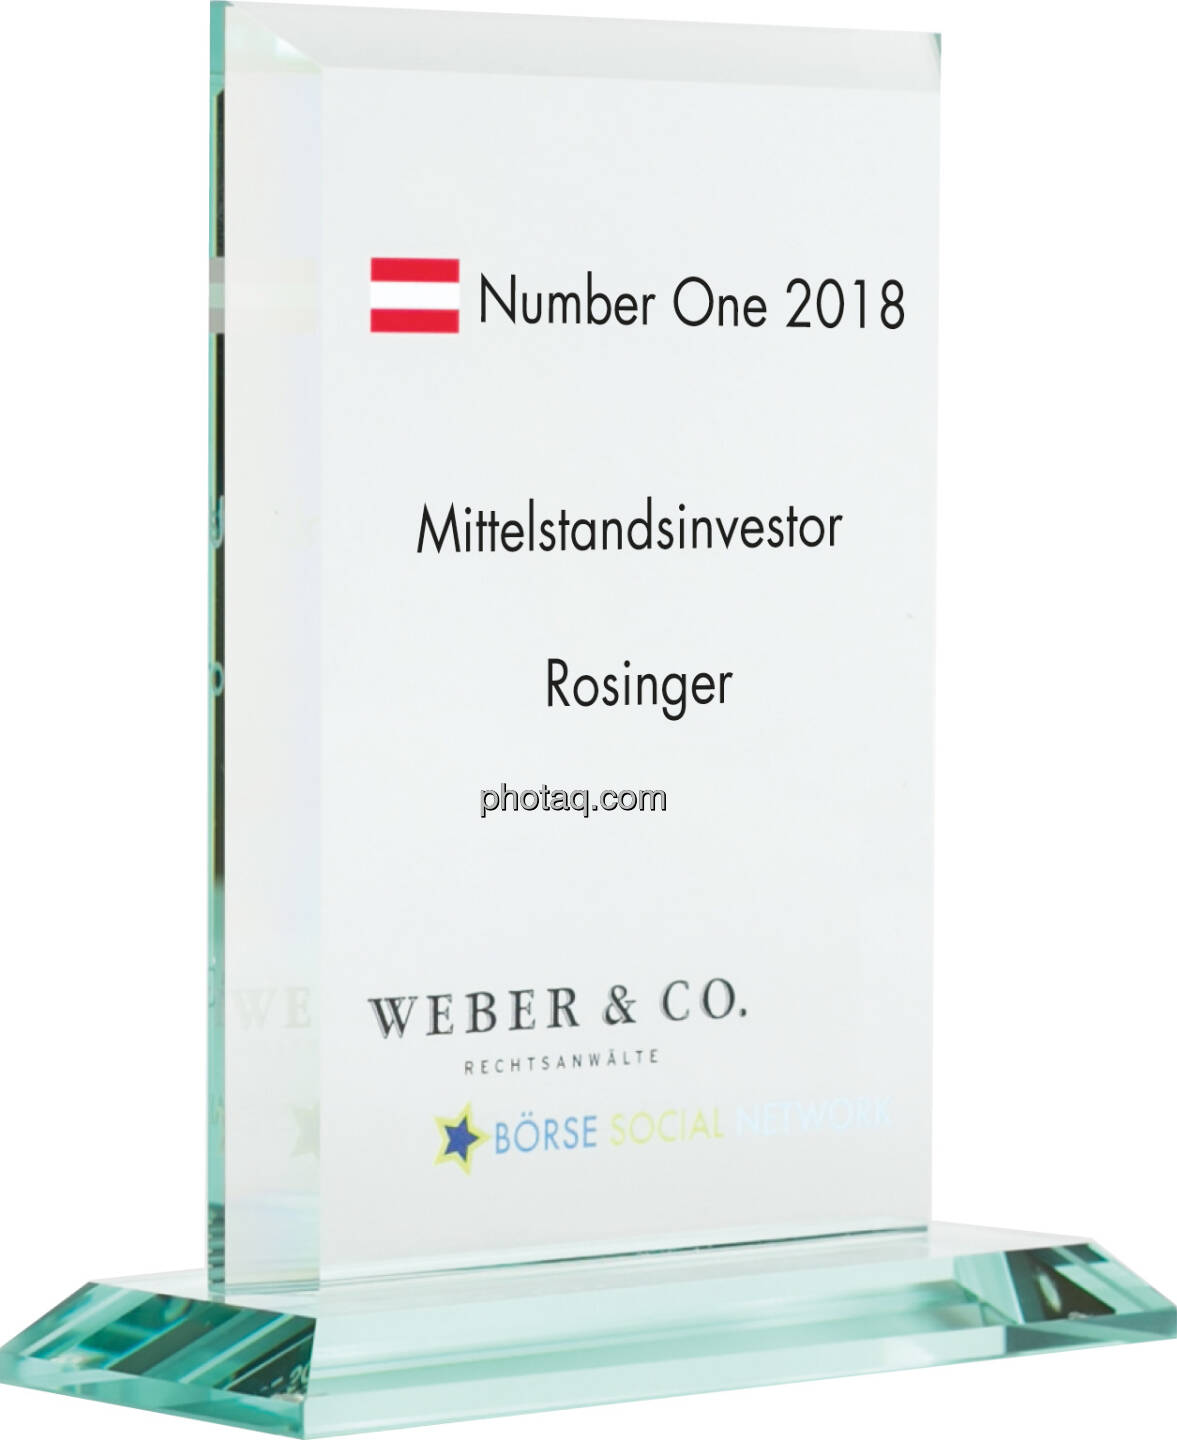 Number One Awards 2018 - Mittelstandsinvestor Rosinger